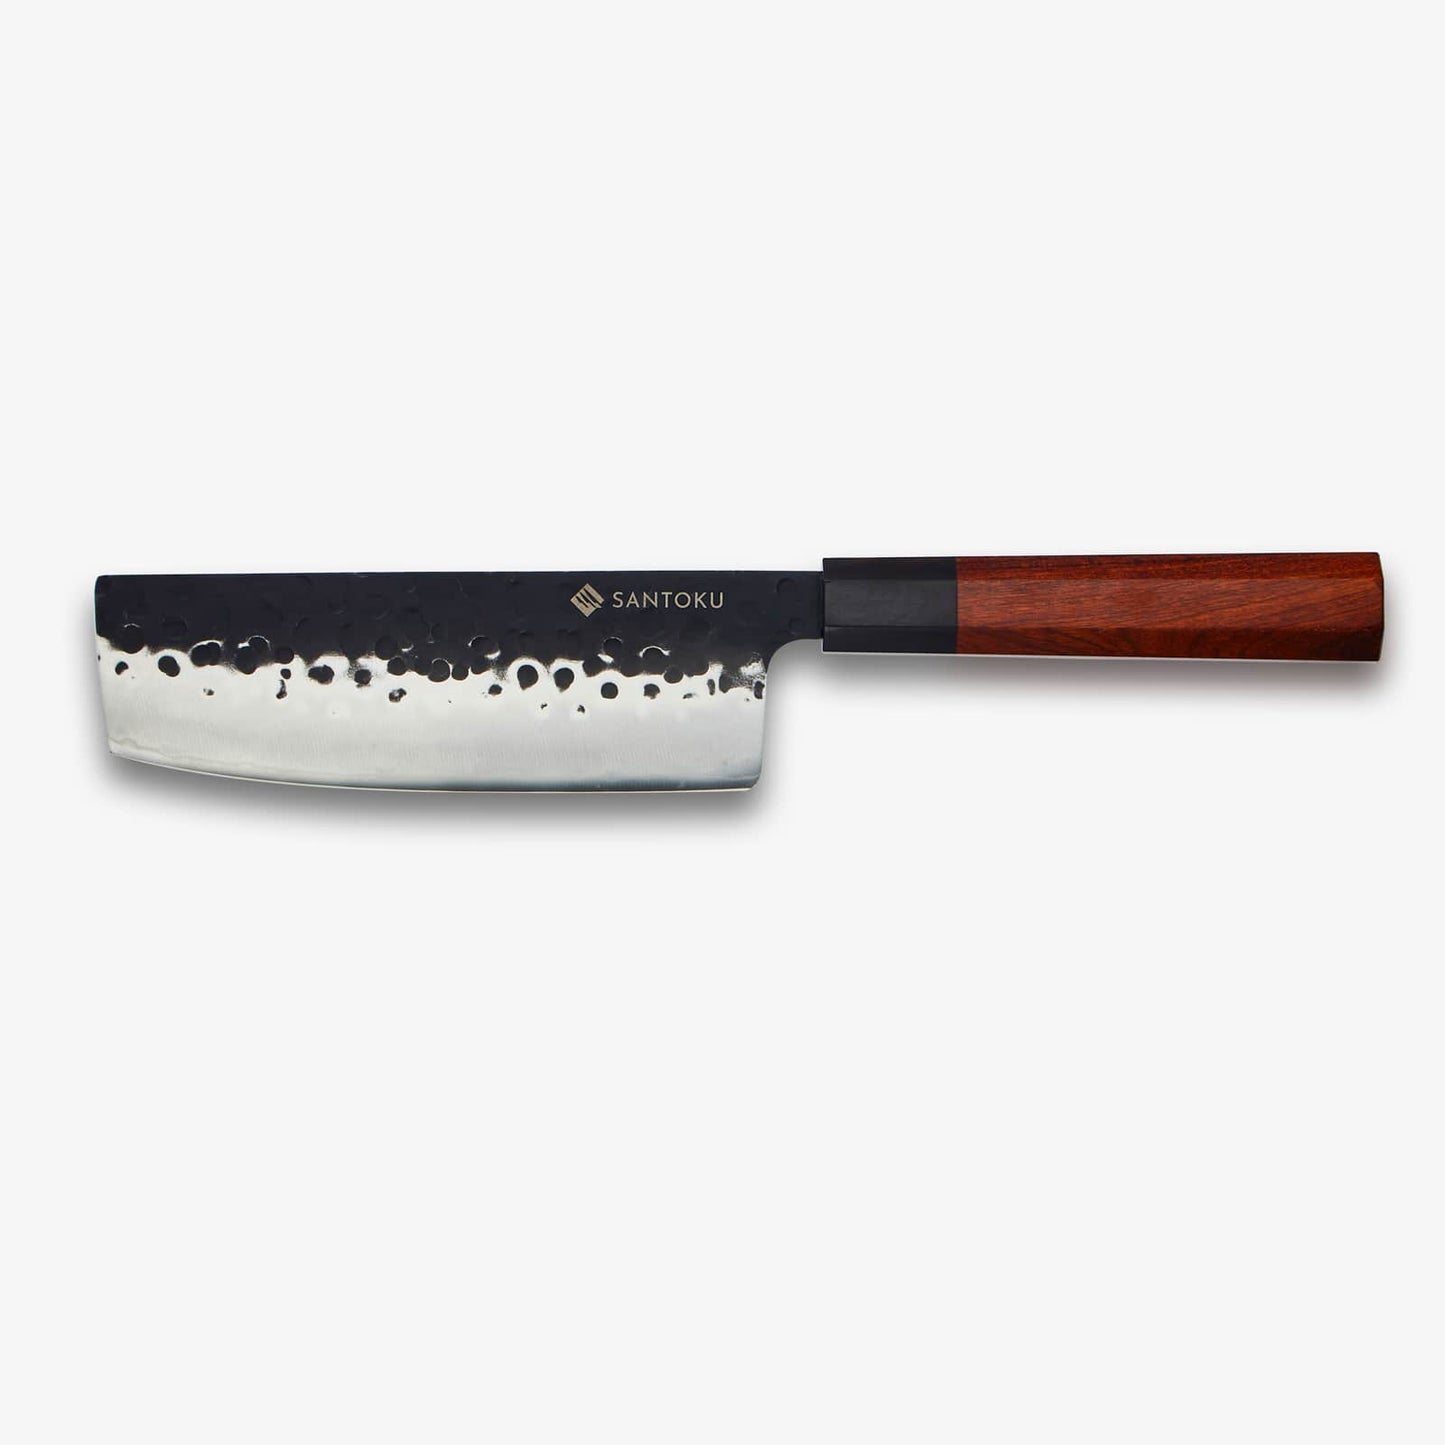 Ensemble de minato avec une grille de couteau en bois magnétique